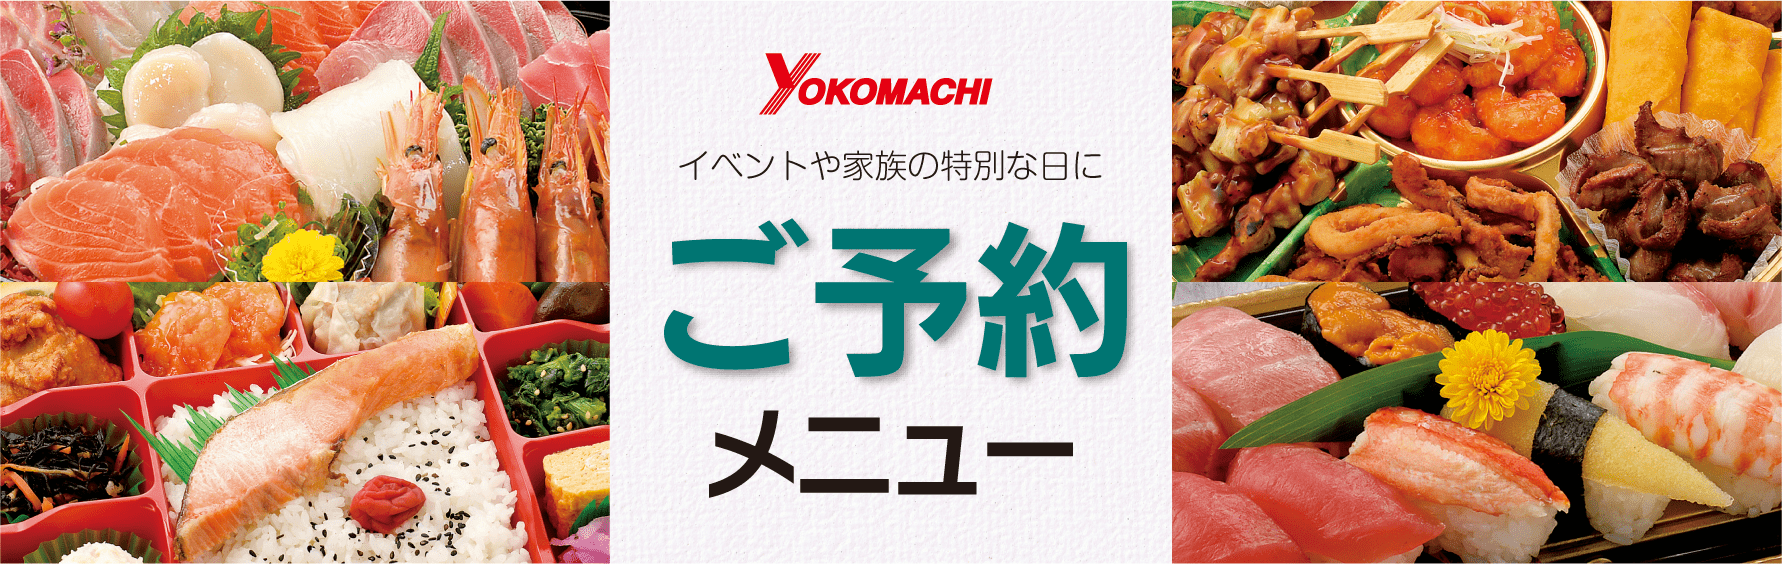 yokomachi_tsuujou_yoyaku_855x270